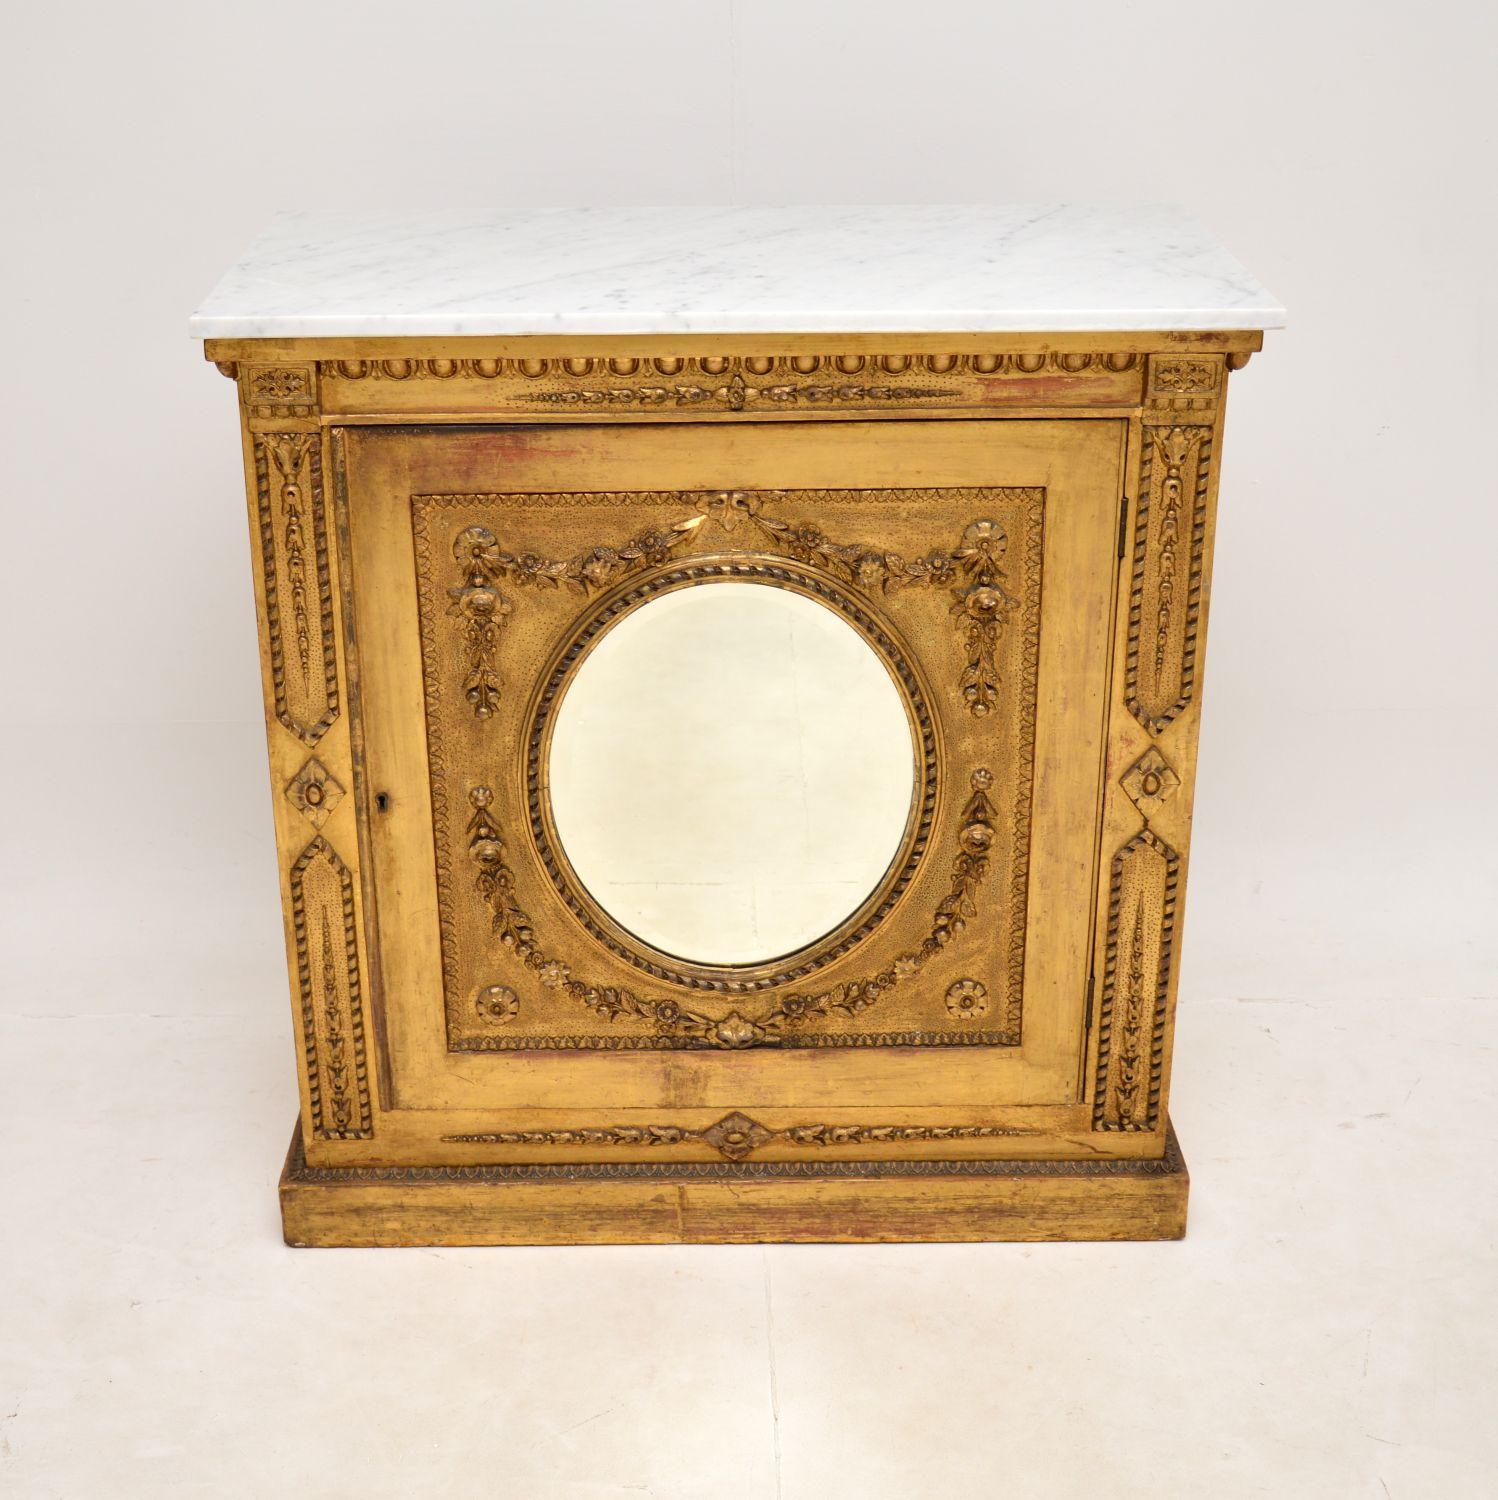 Eine schöne und ziemlich ungewöhnliche antike viktorianische vergoldetem Holz Marmor oben Schrank. Sie wurde in England hergestellt und stammt aus der Zeit zwischen 1860 und 1880.

Es ist von fantastischer Qualität, das ist voller Charakter und